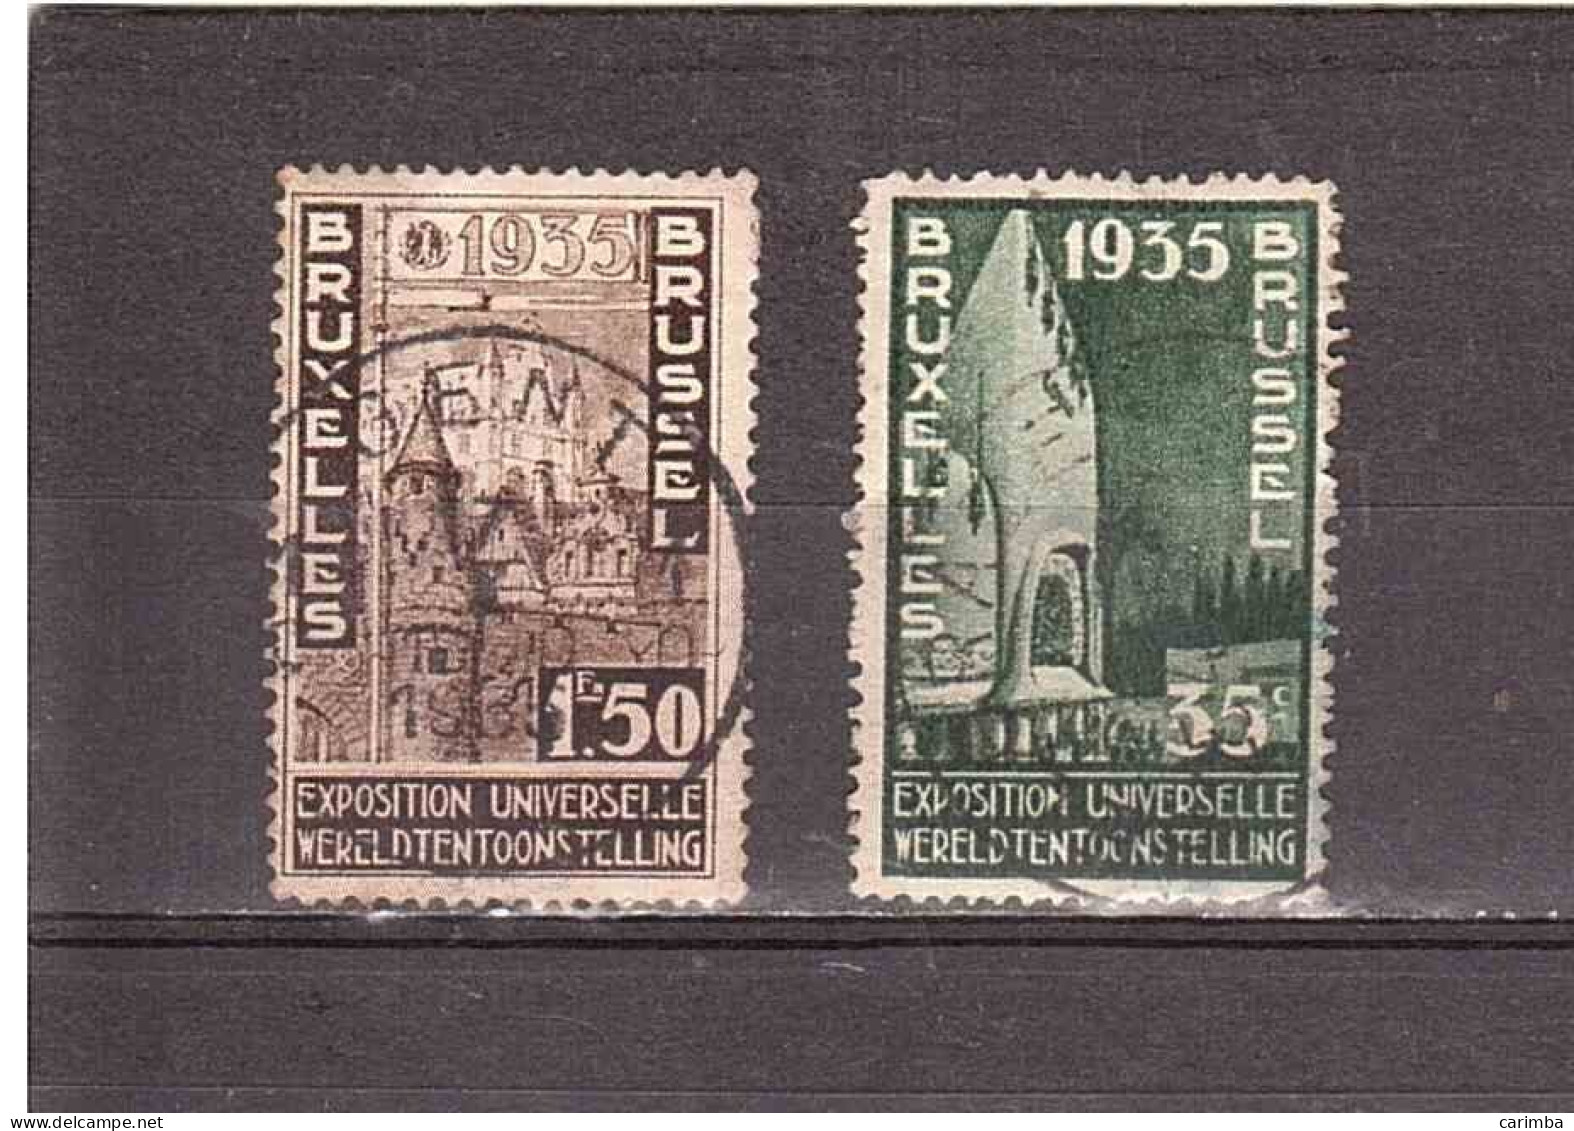 BELGIO 1935 BRUXELLES EXPOSITION UNIVERSELLE - 1935 – Bruxelles (Belgique)